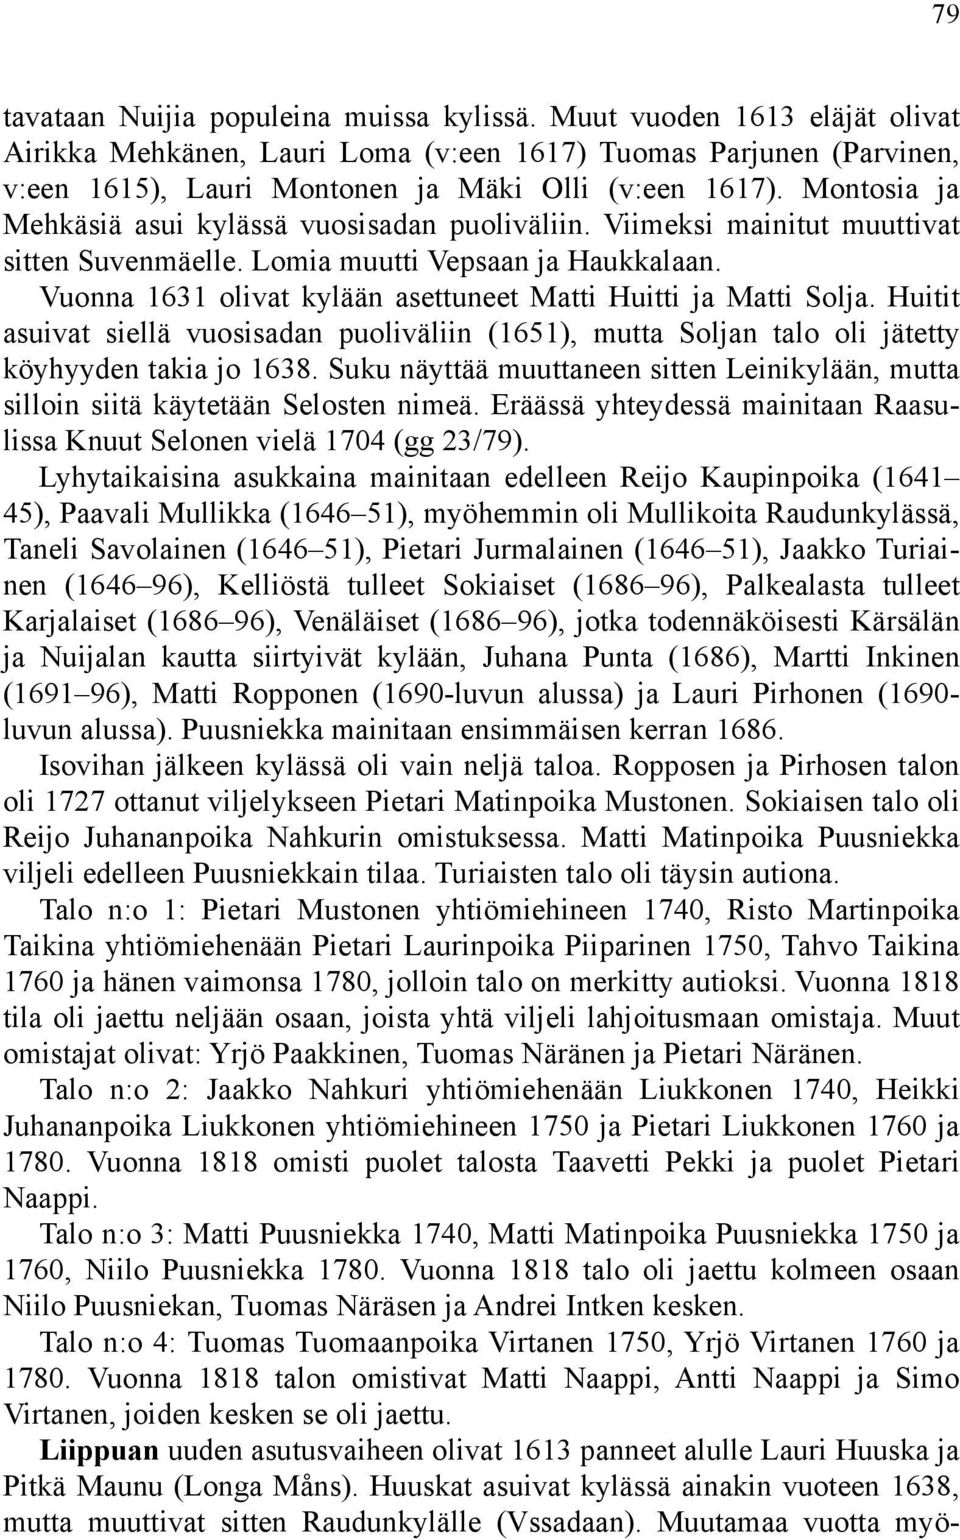 Vuonna 1631 olivat kylään asettuneet Matti Huitti ja Matti Solja. Huitit asuivat siellä vuosisadan puoliväliin (1651), mutta Soljan talo oli jätetty köyhyyden takia jo 1638.